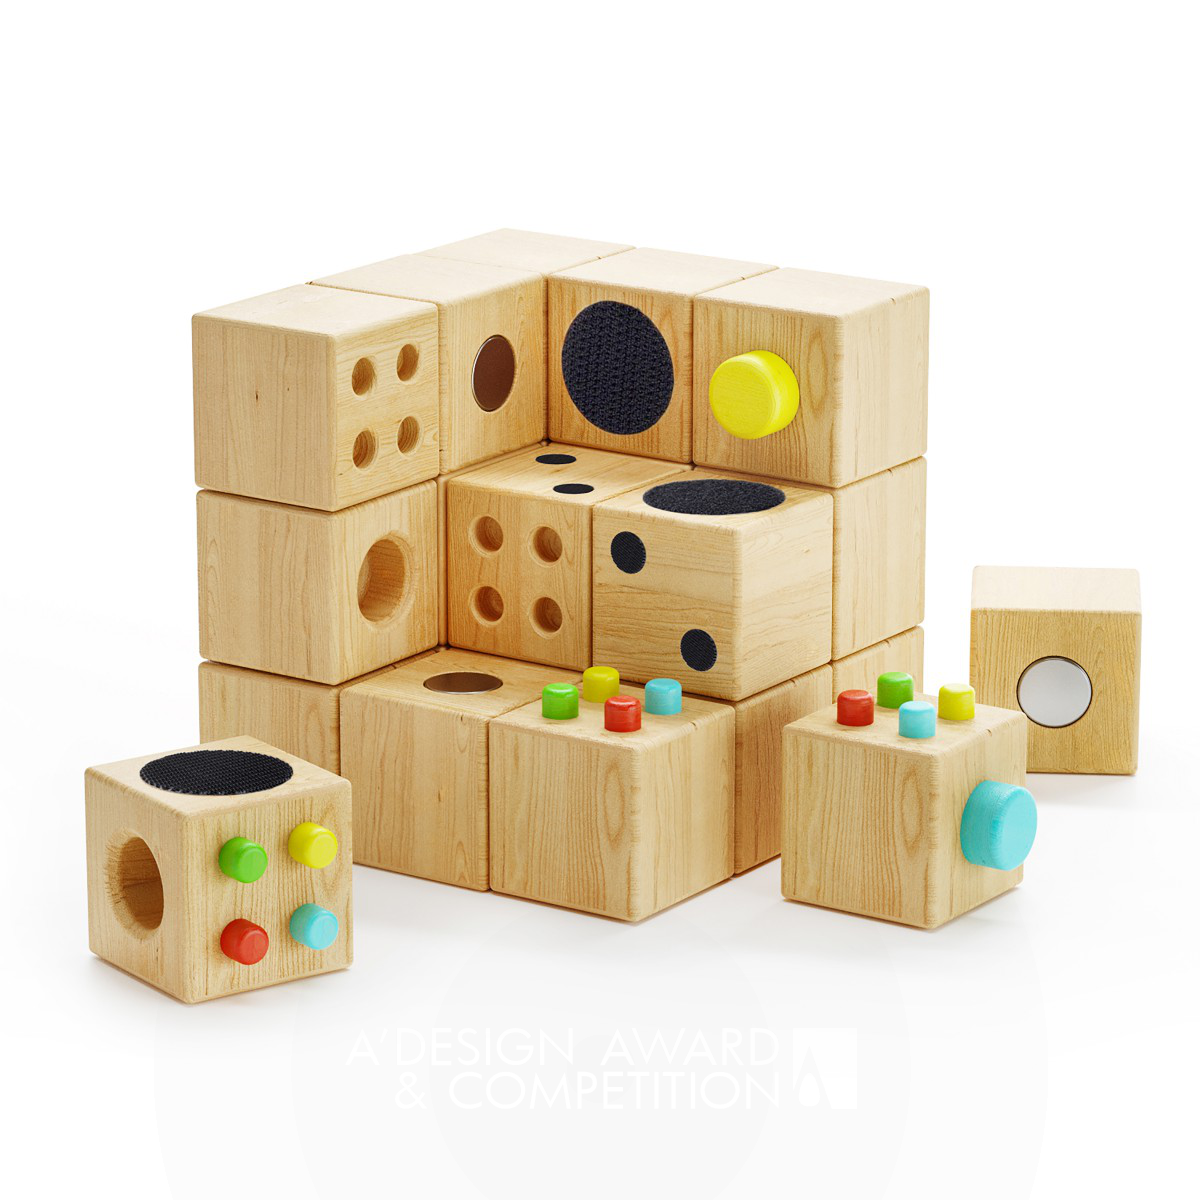 Cubecor: Un Giocattolo in Legno per Stimolare la Creatività dei Bambini